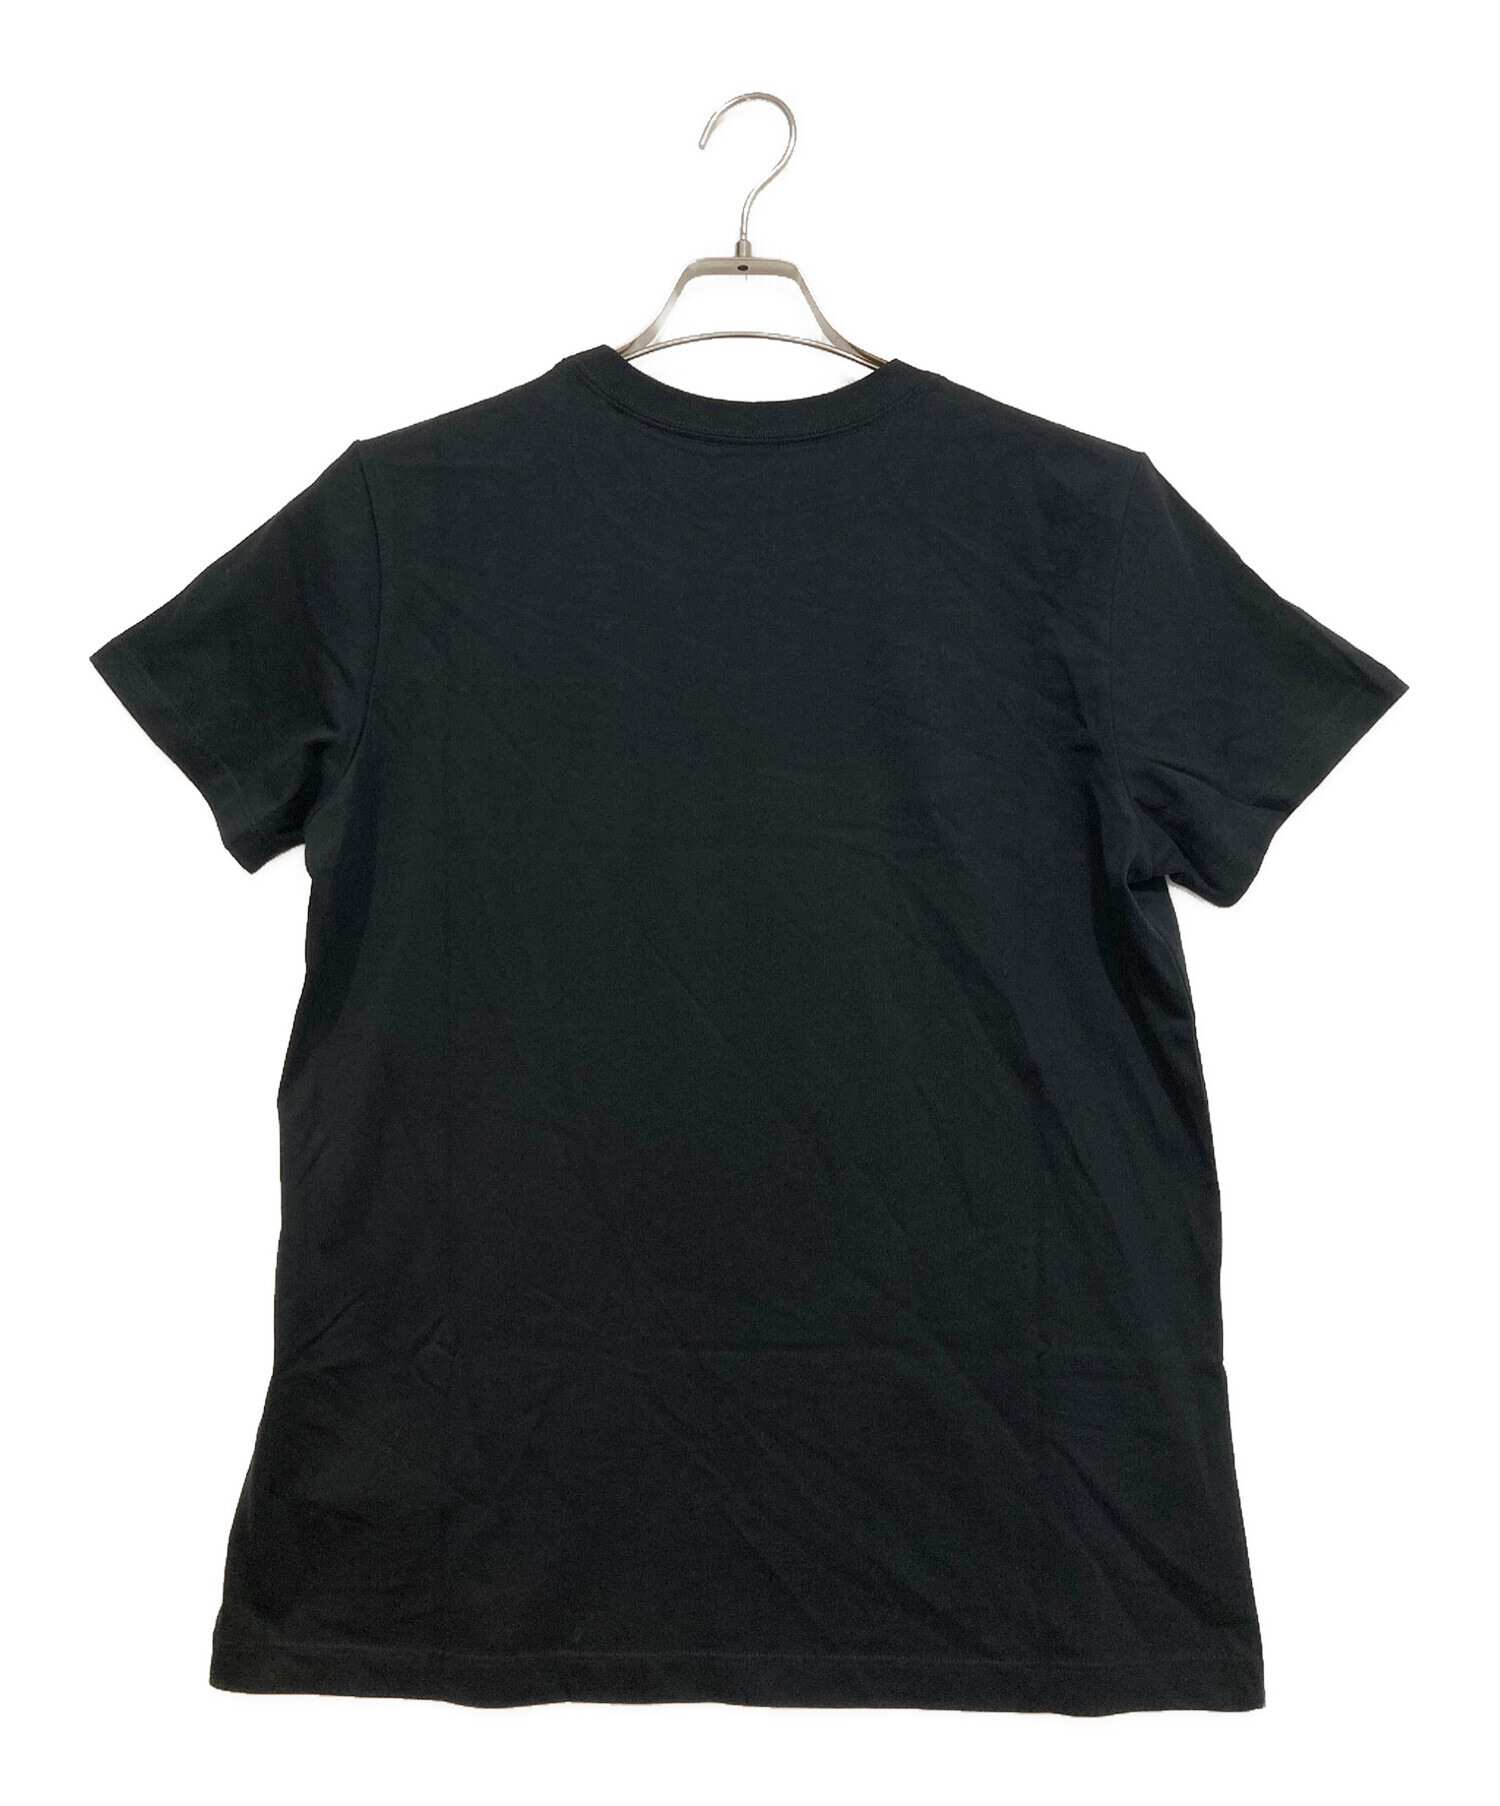 COACH (コーチ) コラボミッキープリントTシャツ ブラック サイズ:S